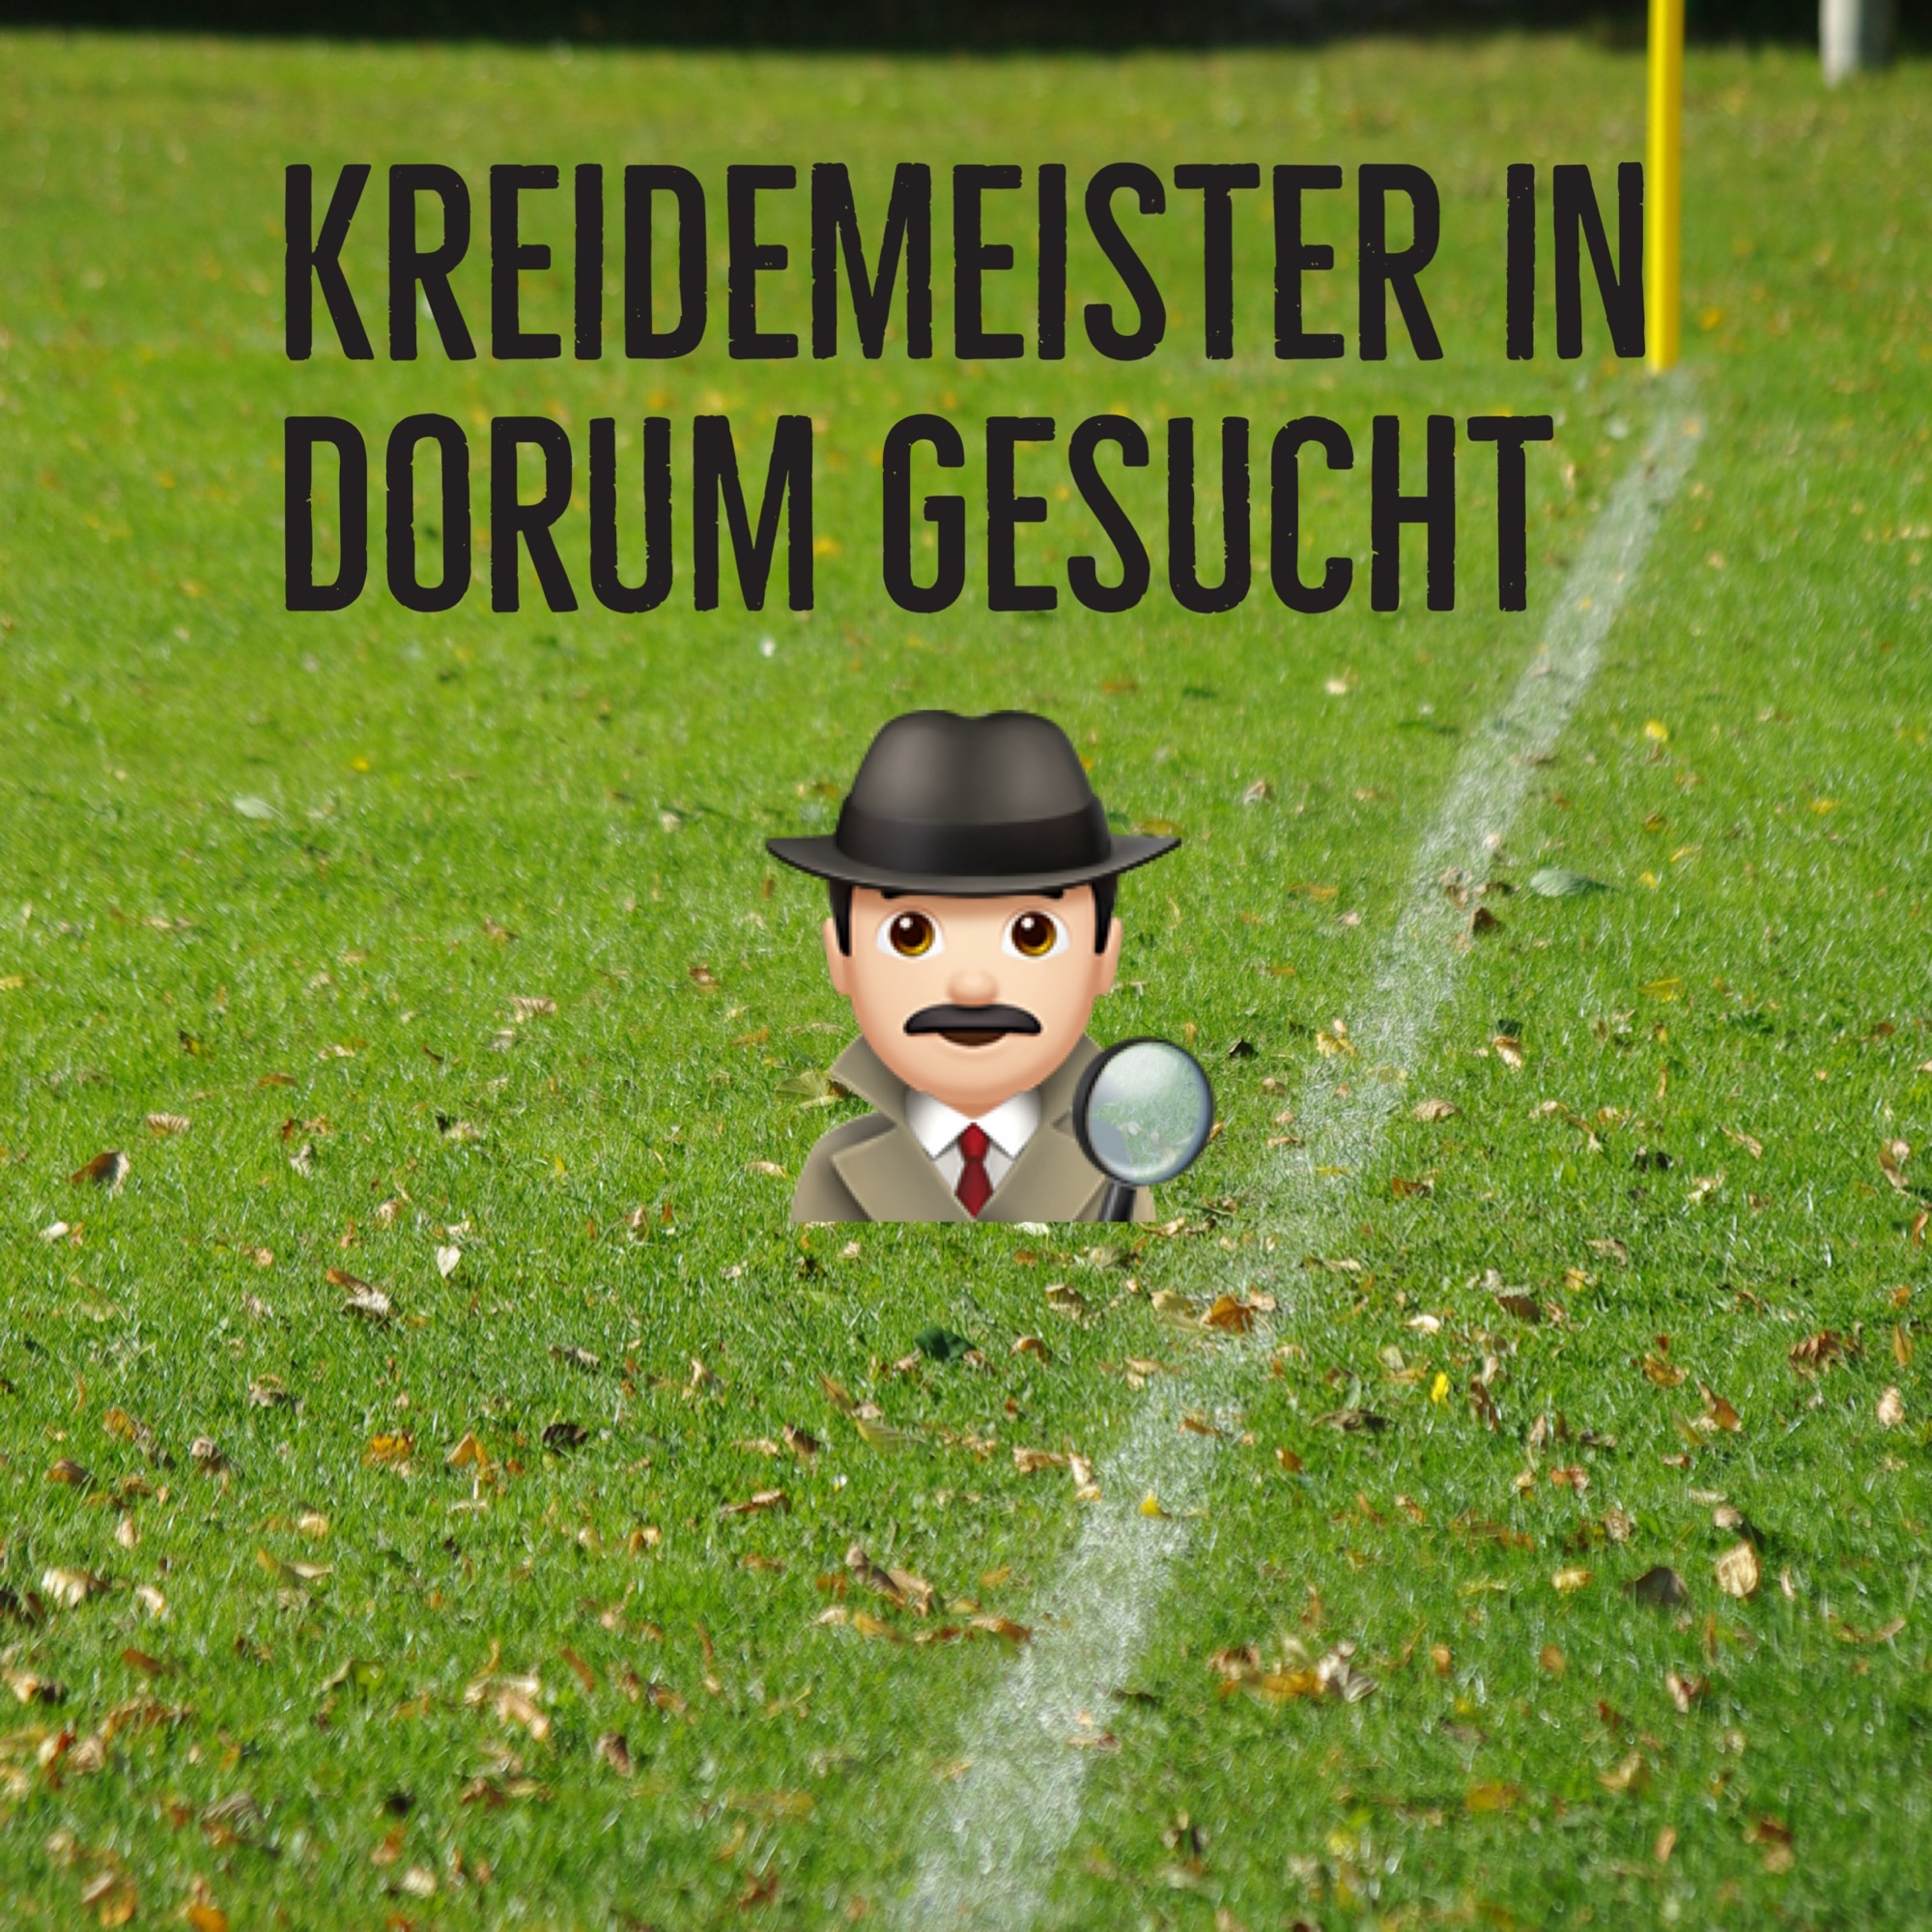 You are currently viewing Kreidemeister für die Sportplätze in Dorum gesucht